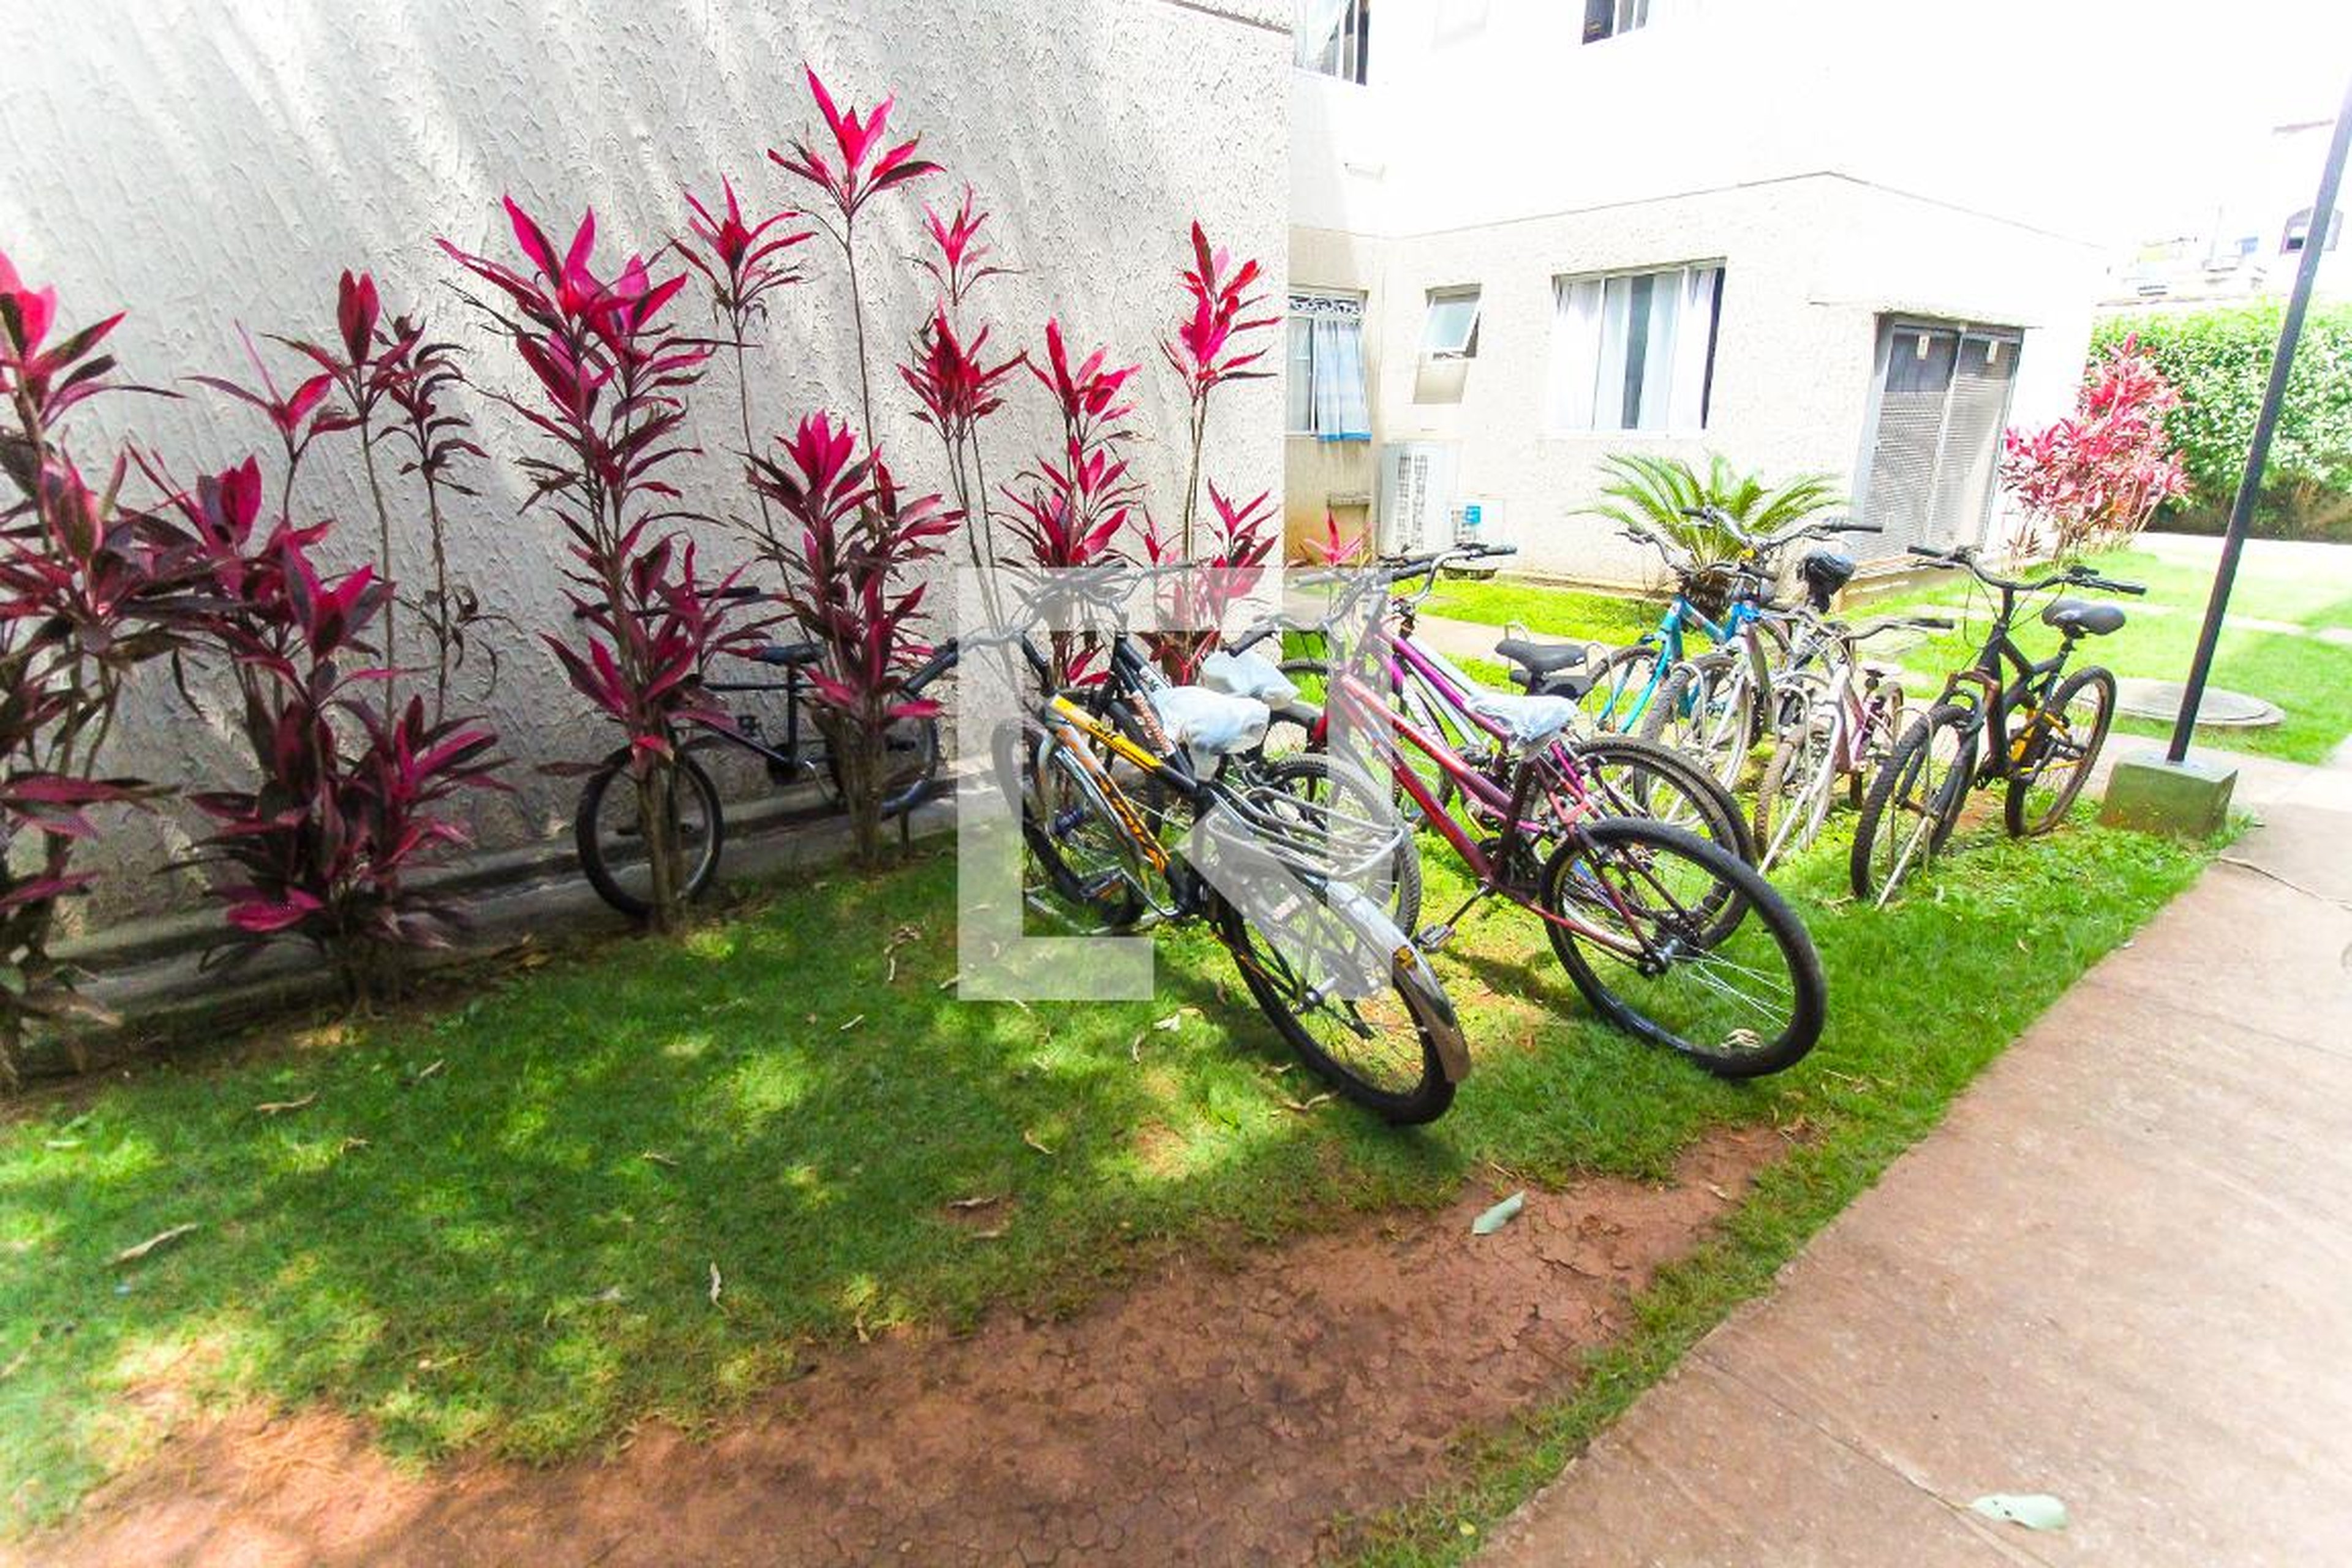 Bicicletario - Jardim Romano